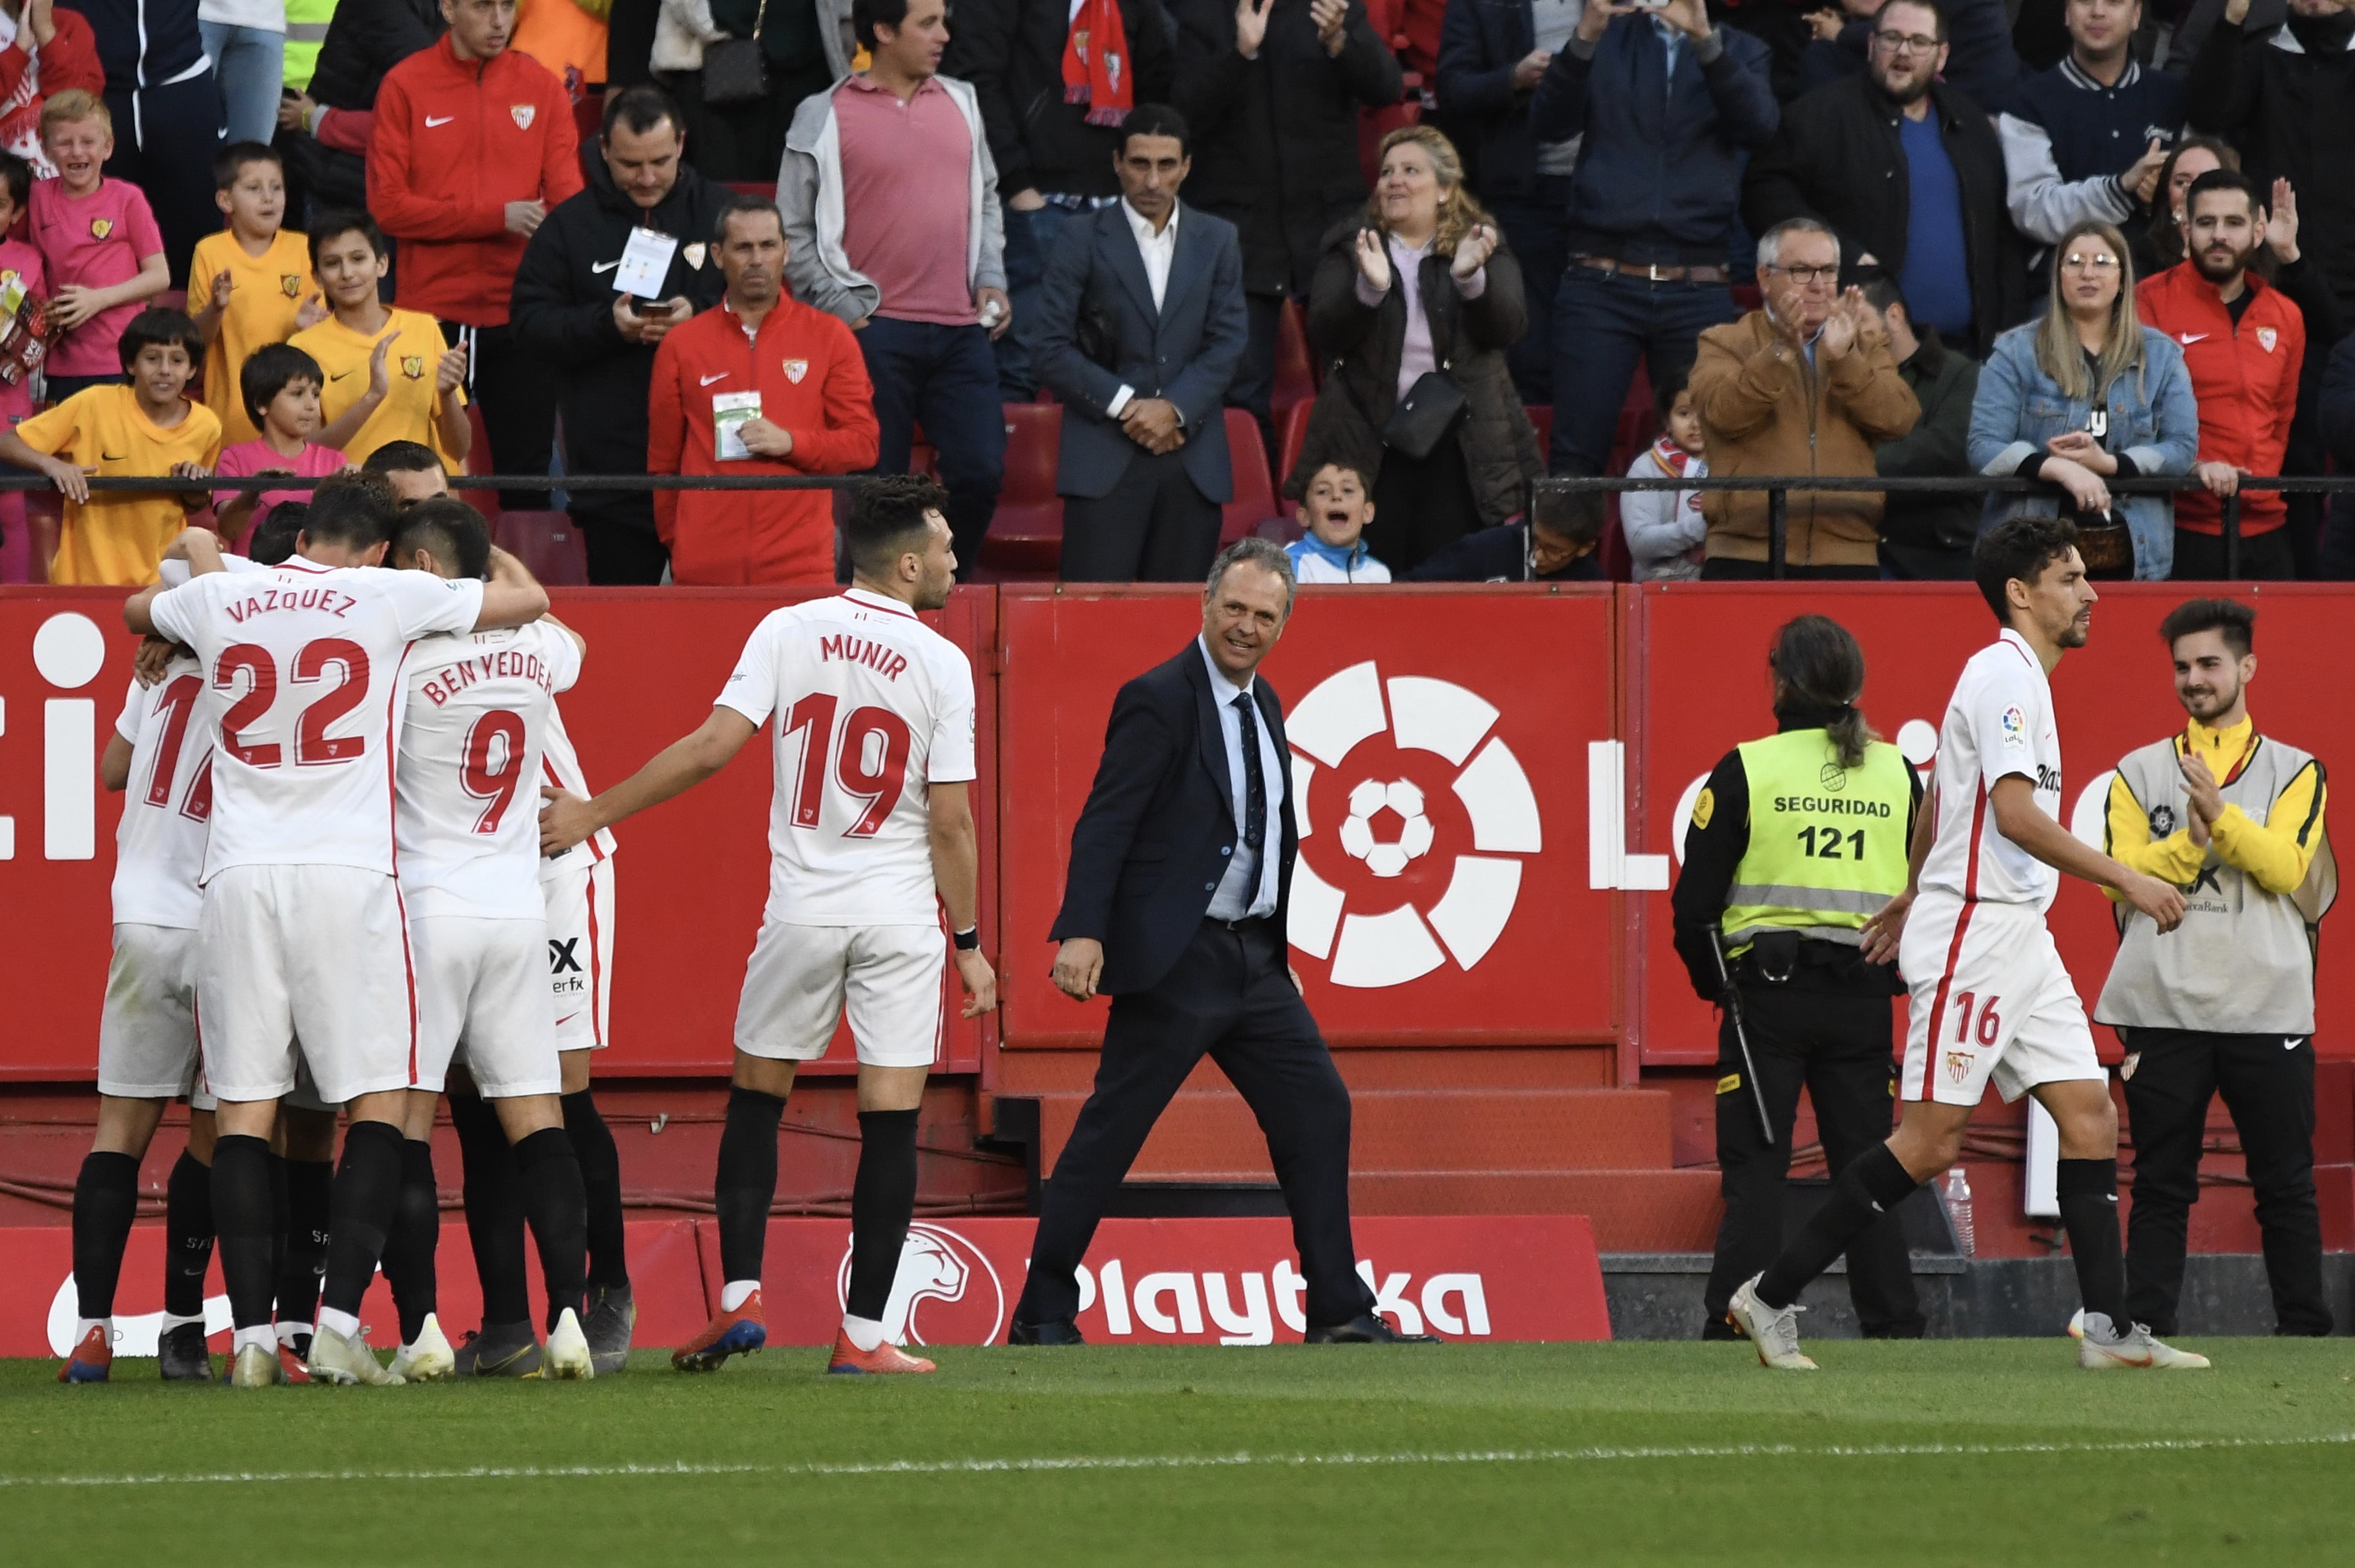 Joaquín Caparrós celebrates Roque Mesa's goal